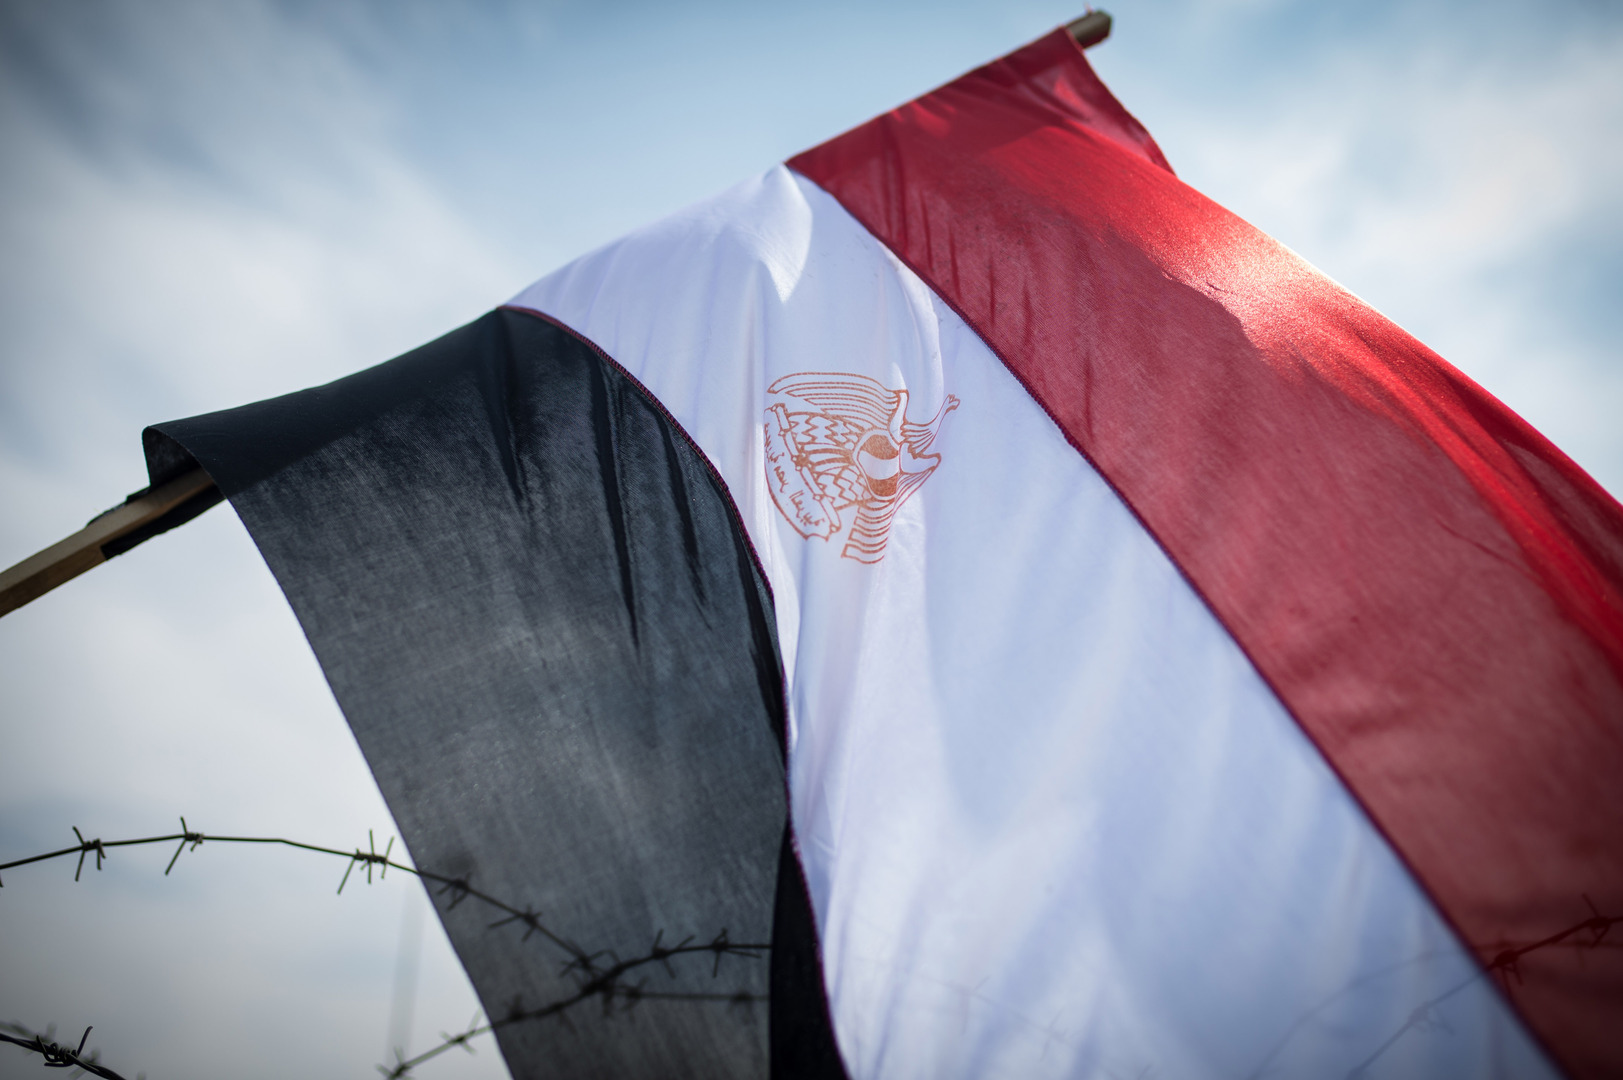 شركة مصرية ترد على أنباء عن تصدير منتجاتها إلى إسرائيل